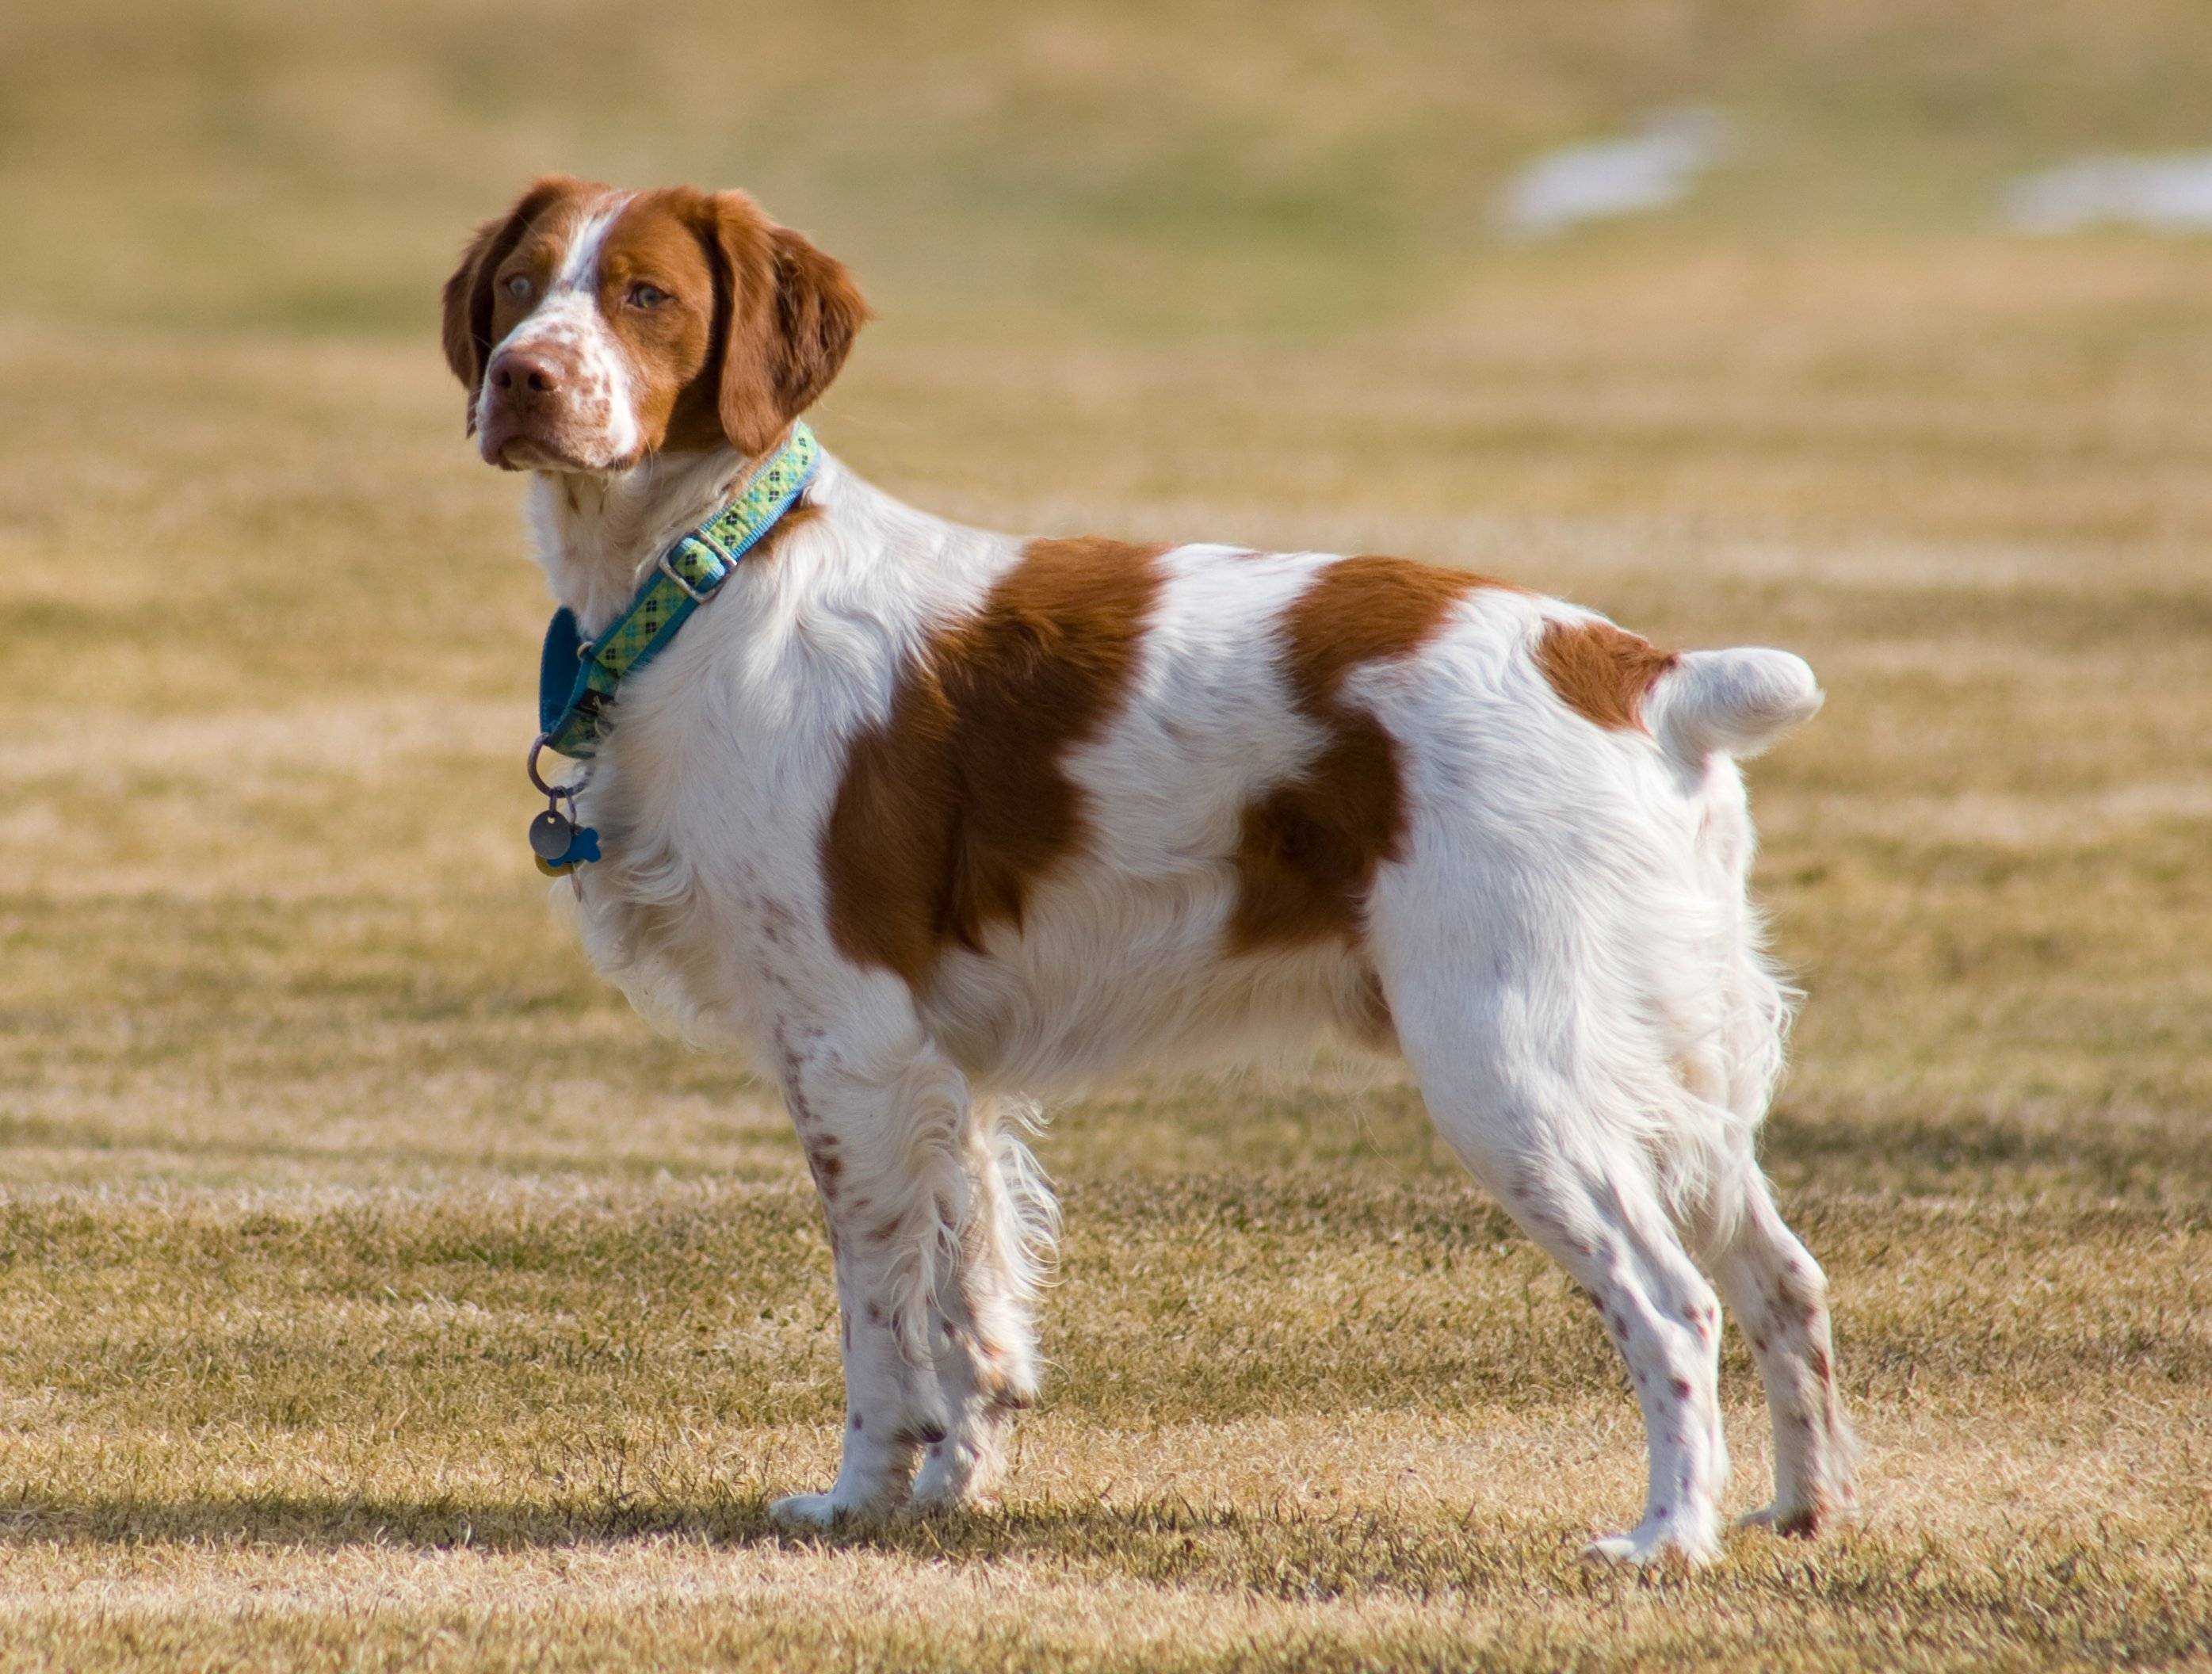 Бретонский эпаньоль (эпаньол бретон): описание породы собак с фото, видео